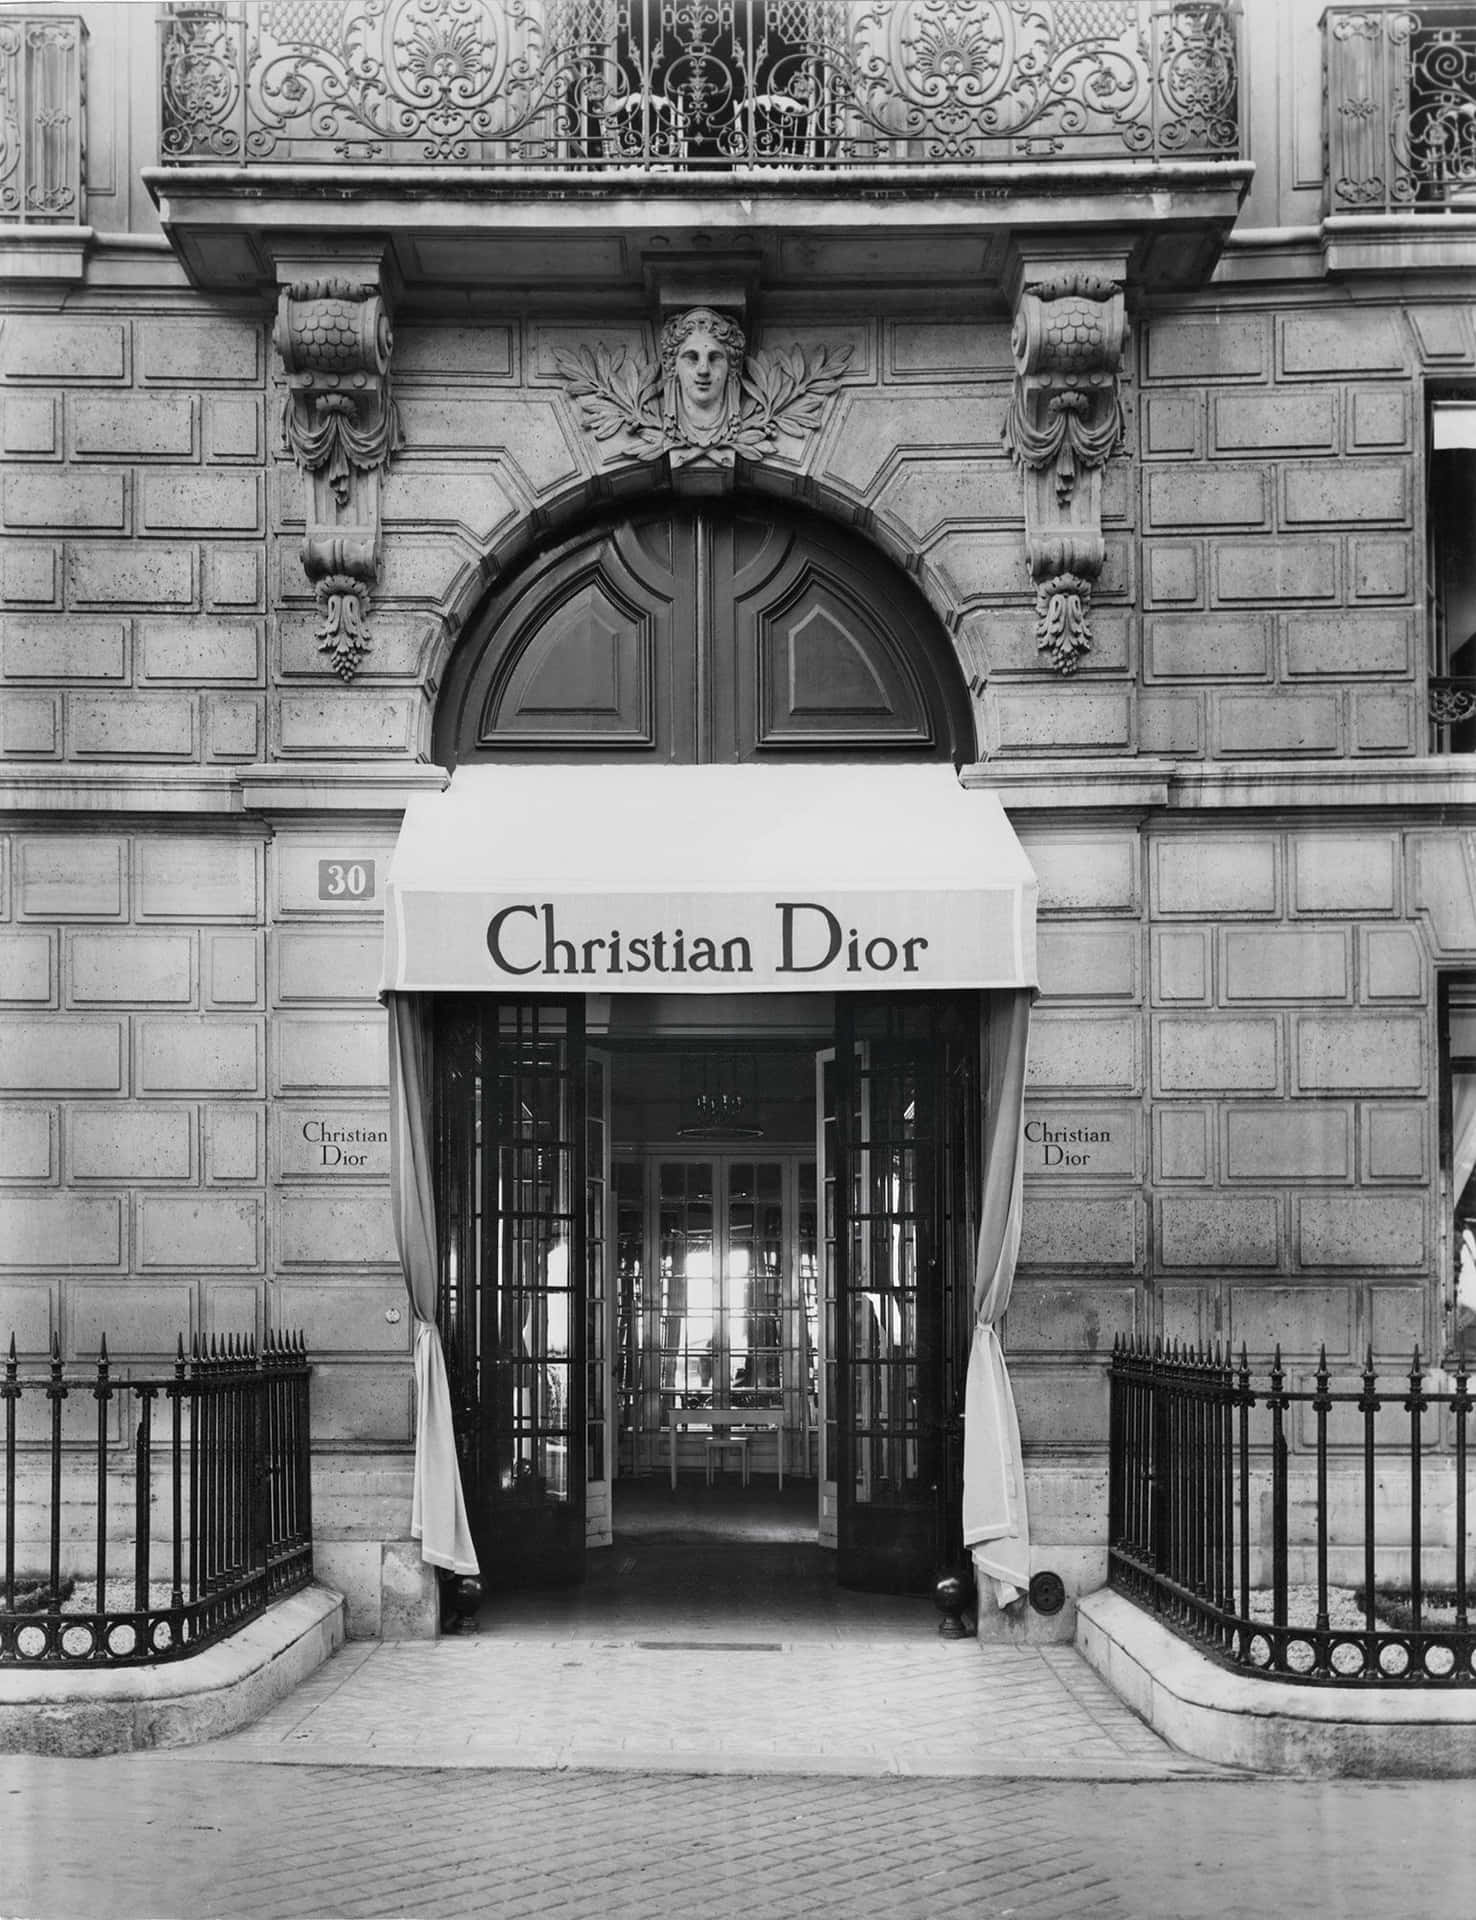 Unafoto En Blanco Y Negro De Un Edificio Con Un Letrero De Christian Dior.